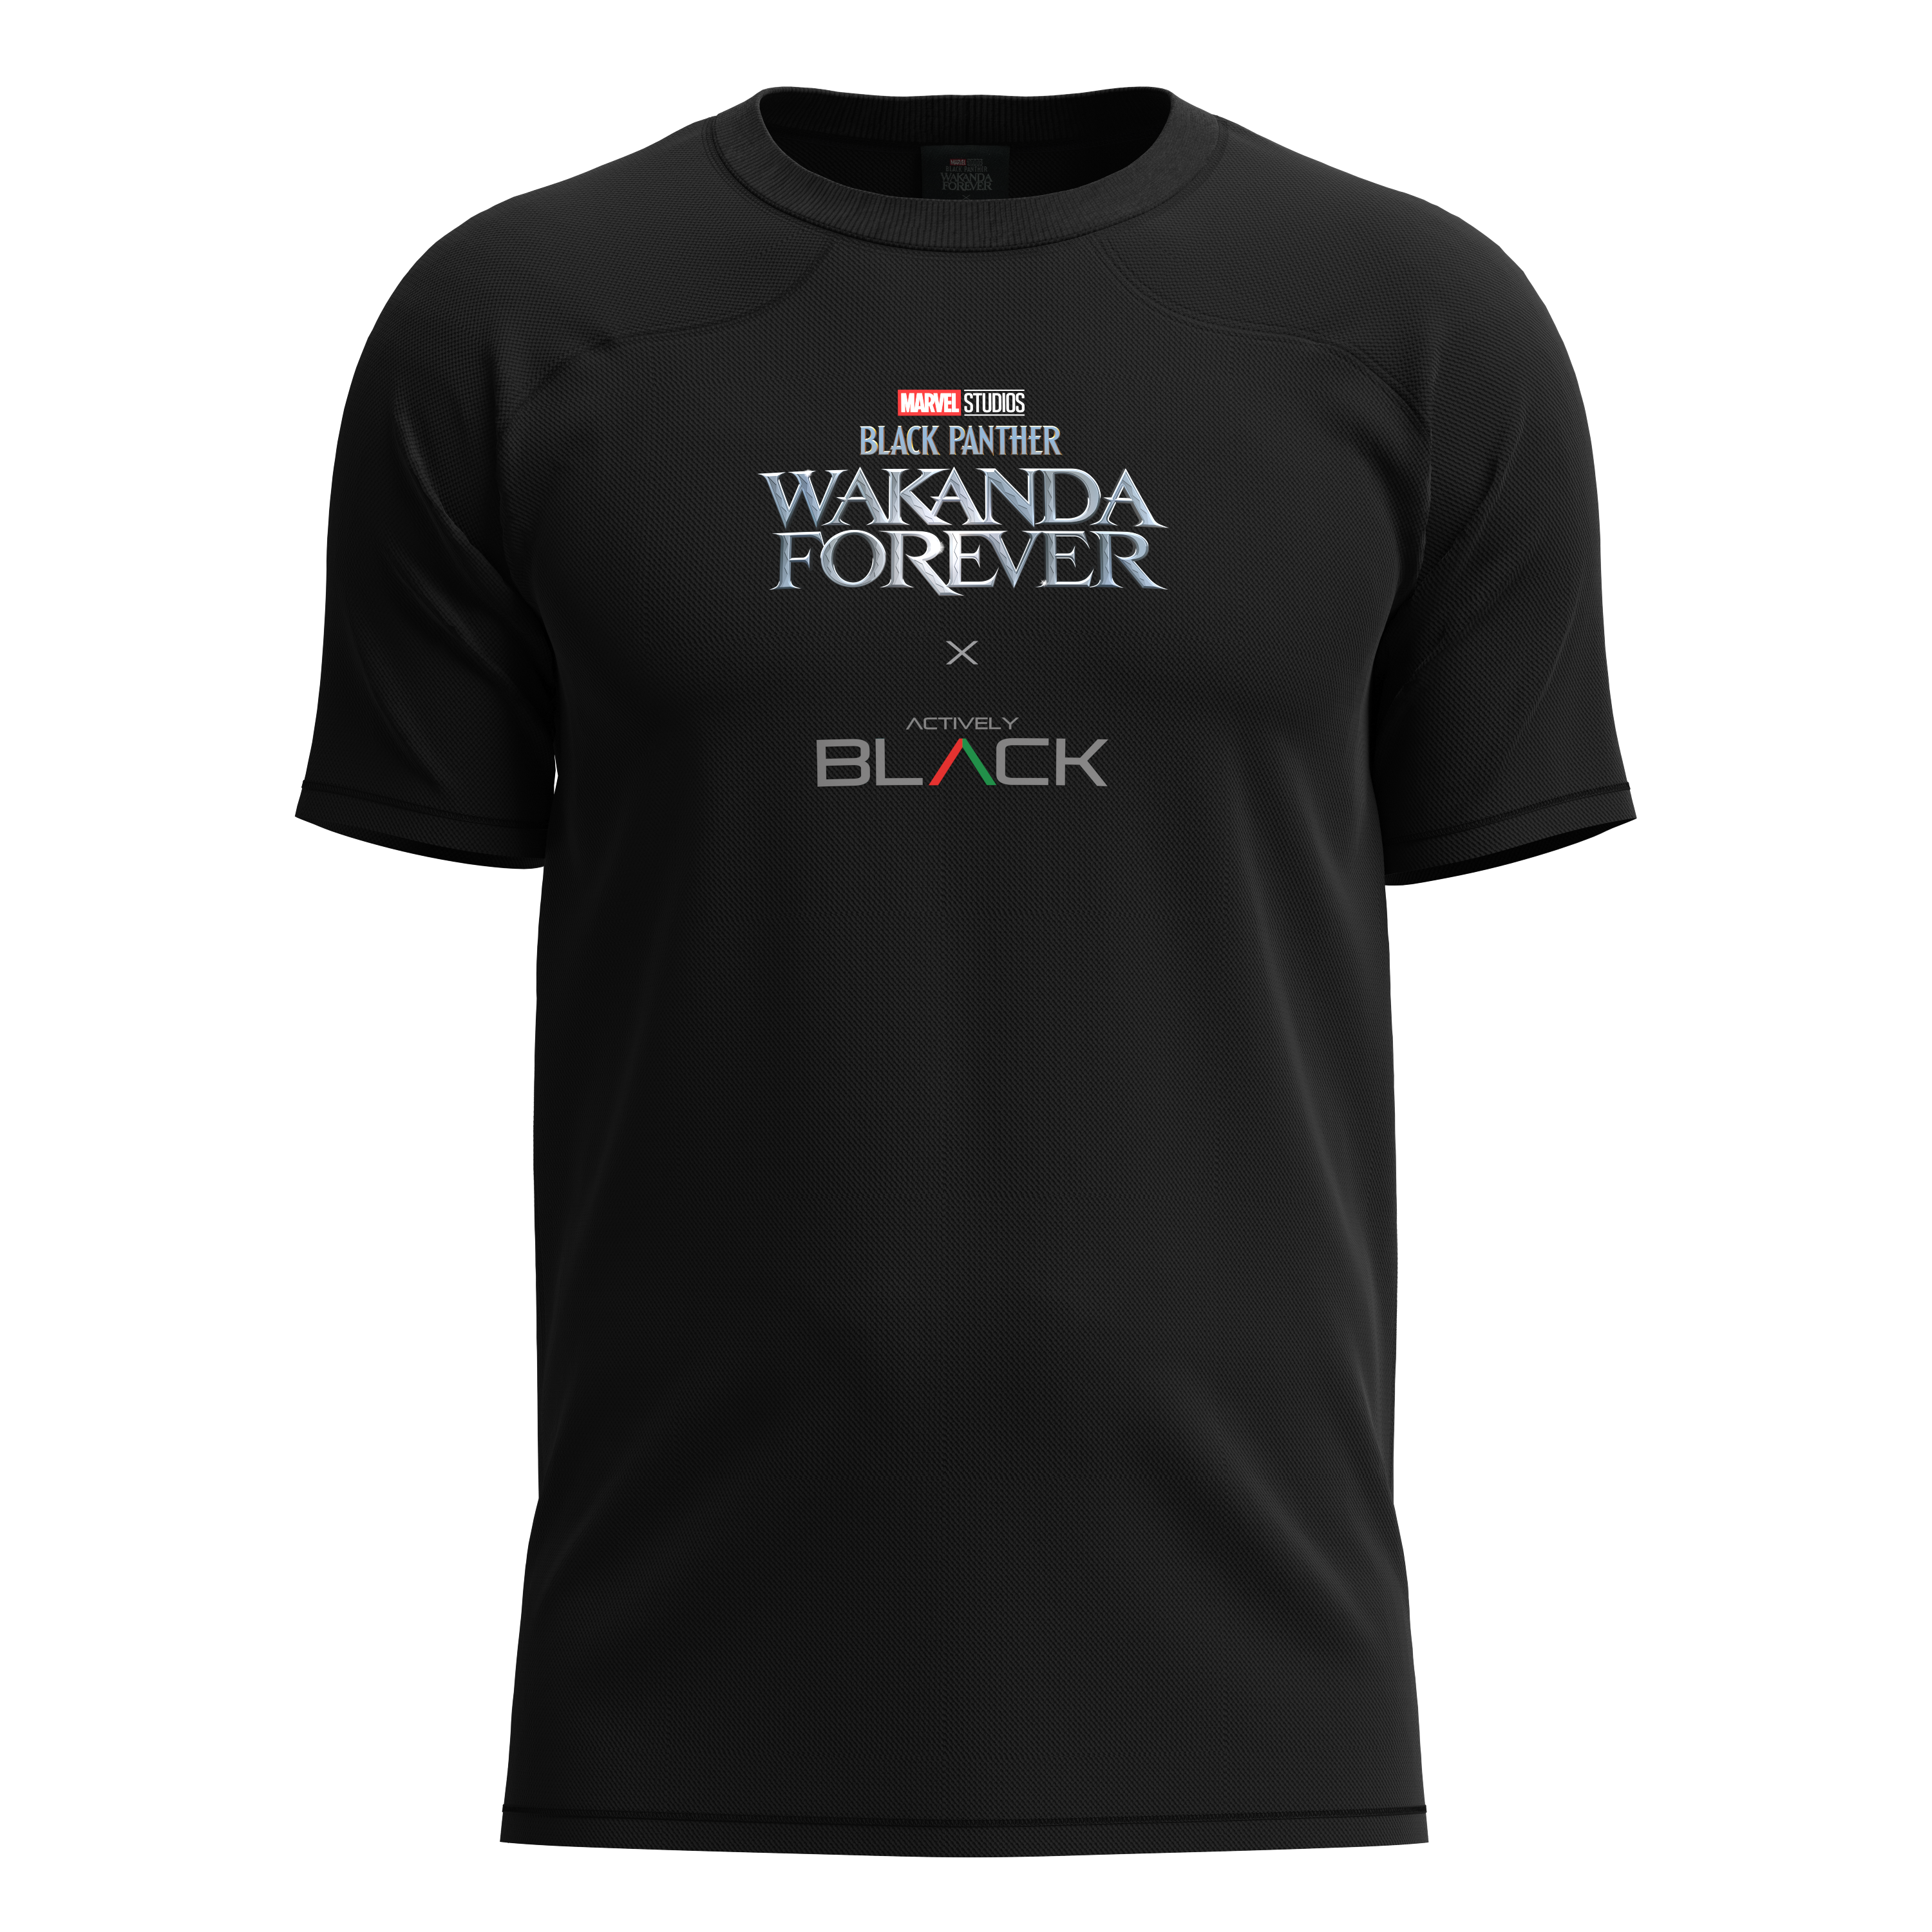 Mavazi Afrique Black Panther - Wakanda T-shirt - Black @ Best Price Online  | Jumia Kenya